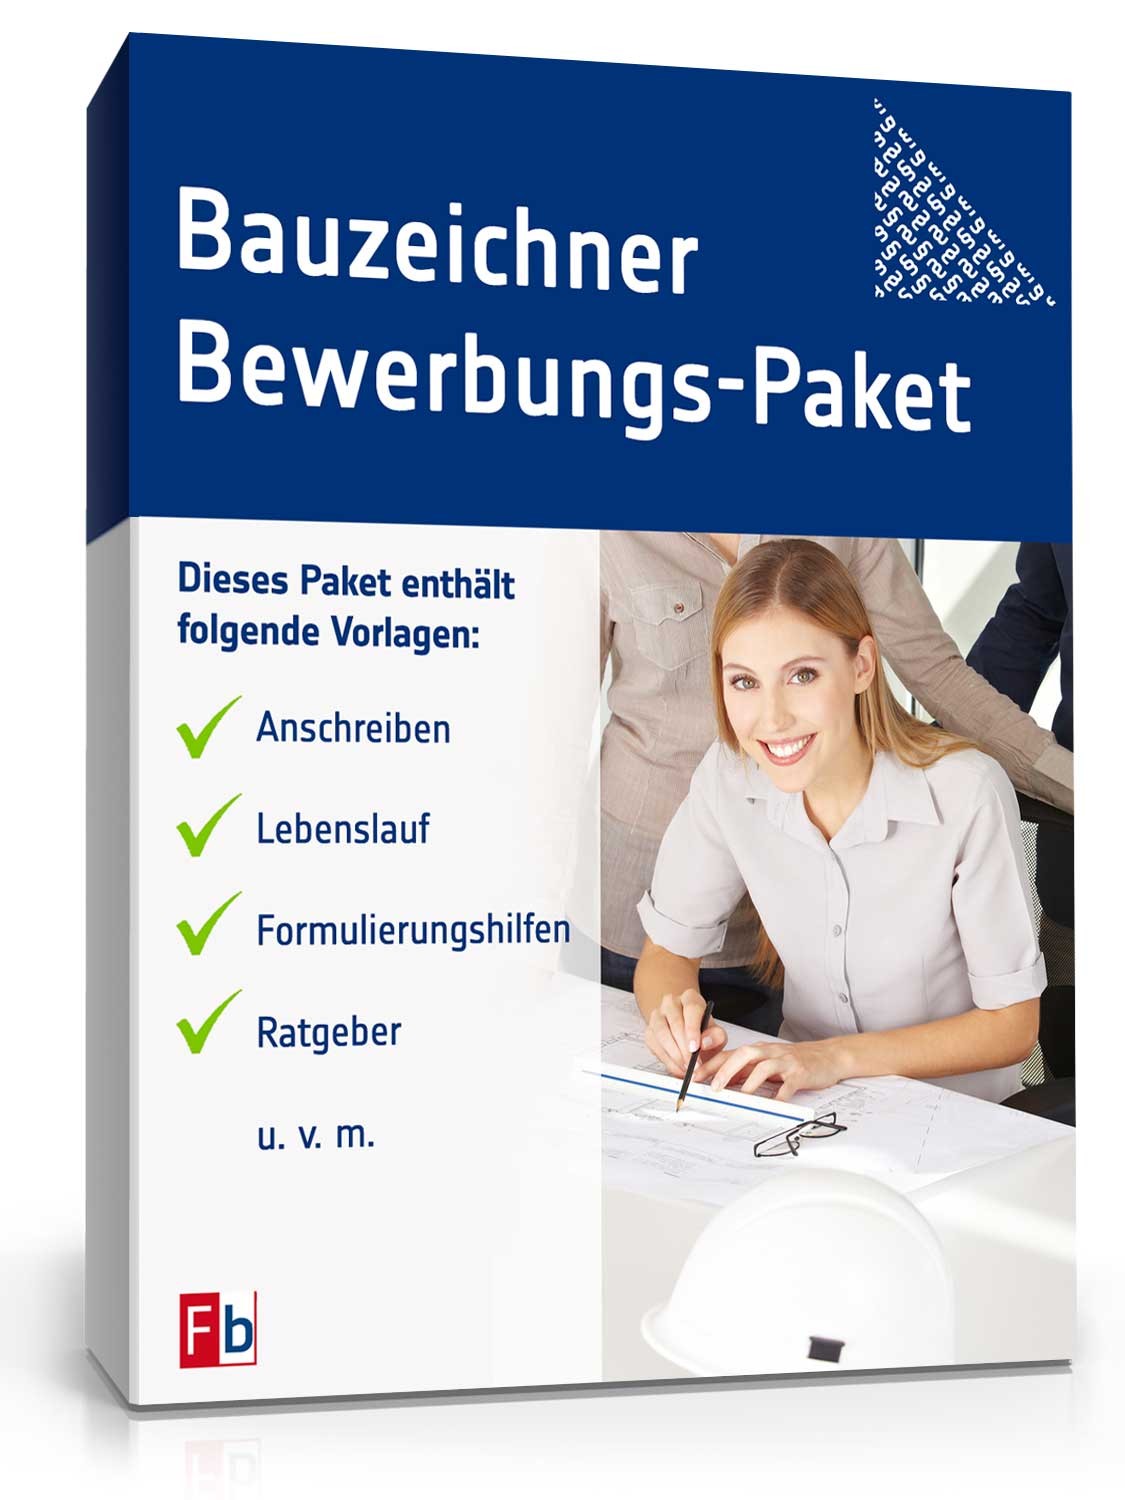 Hauptbild des Produkts: Bewerbungs-Paket Bauzeichner 